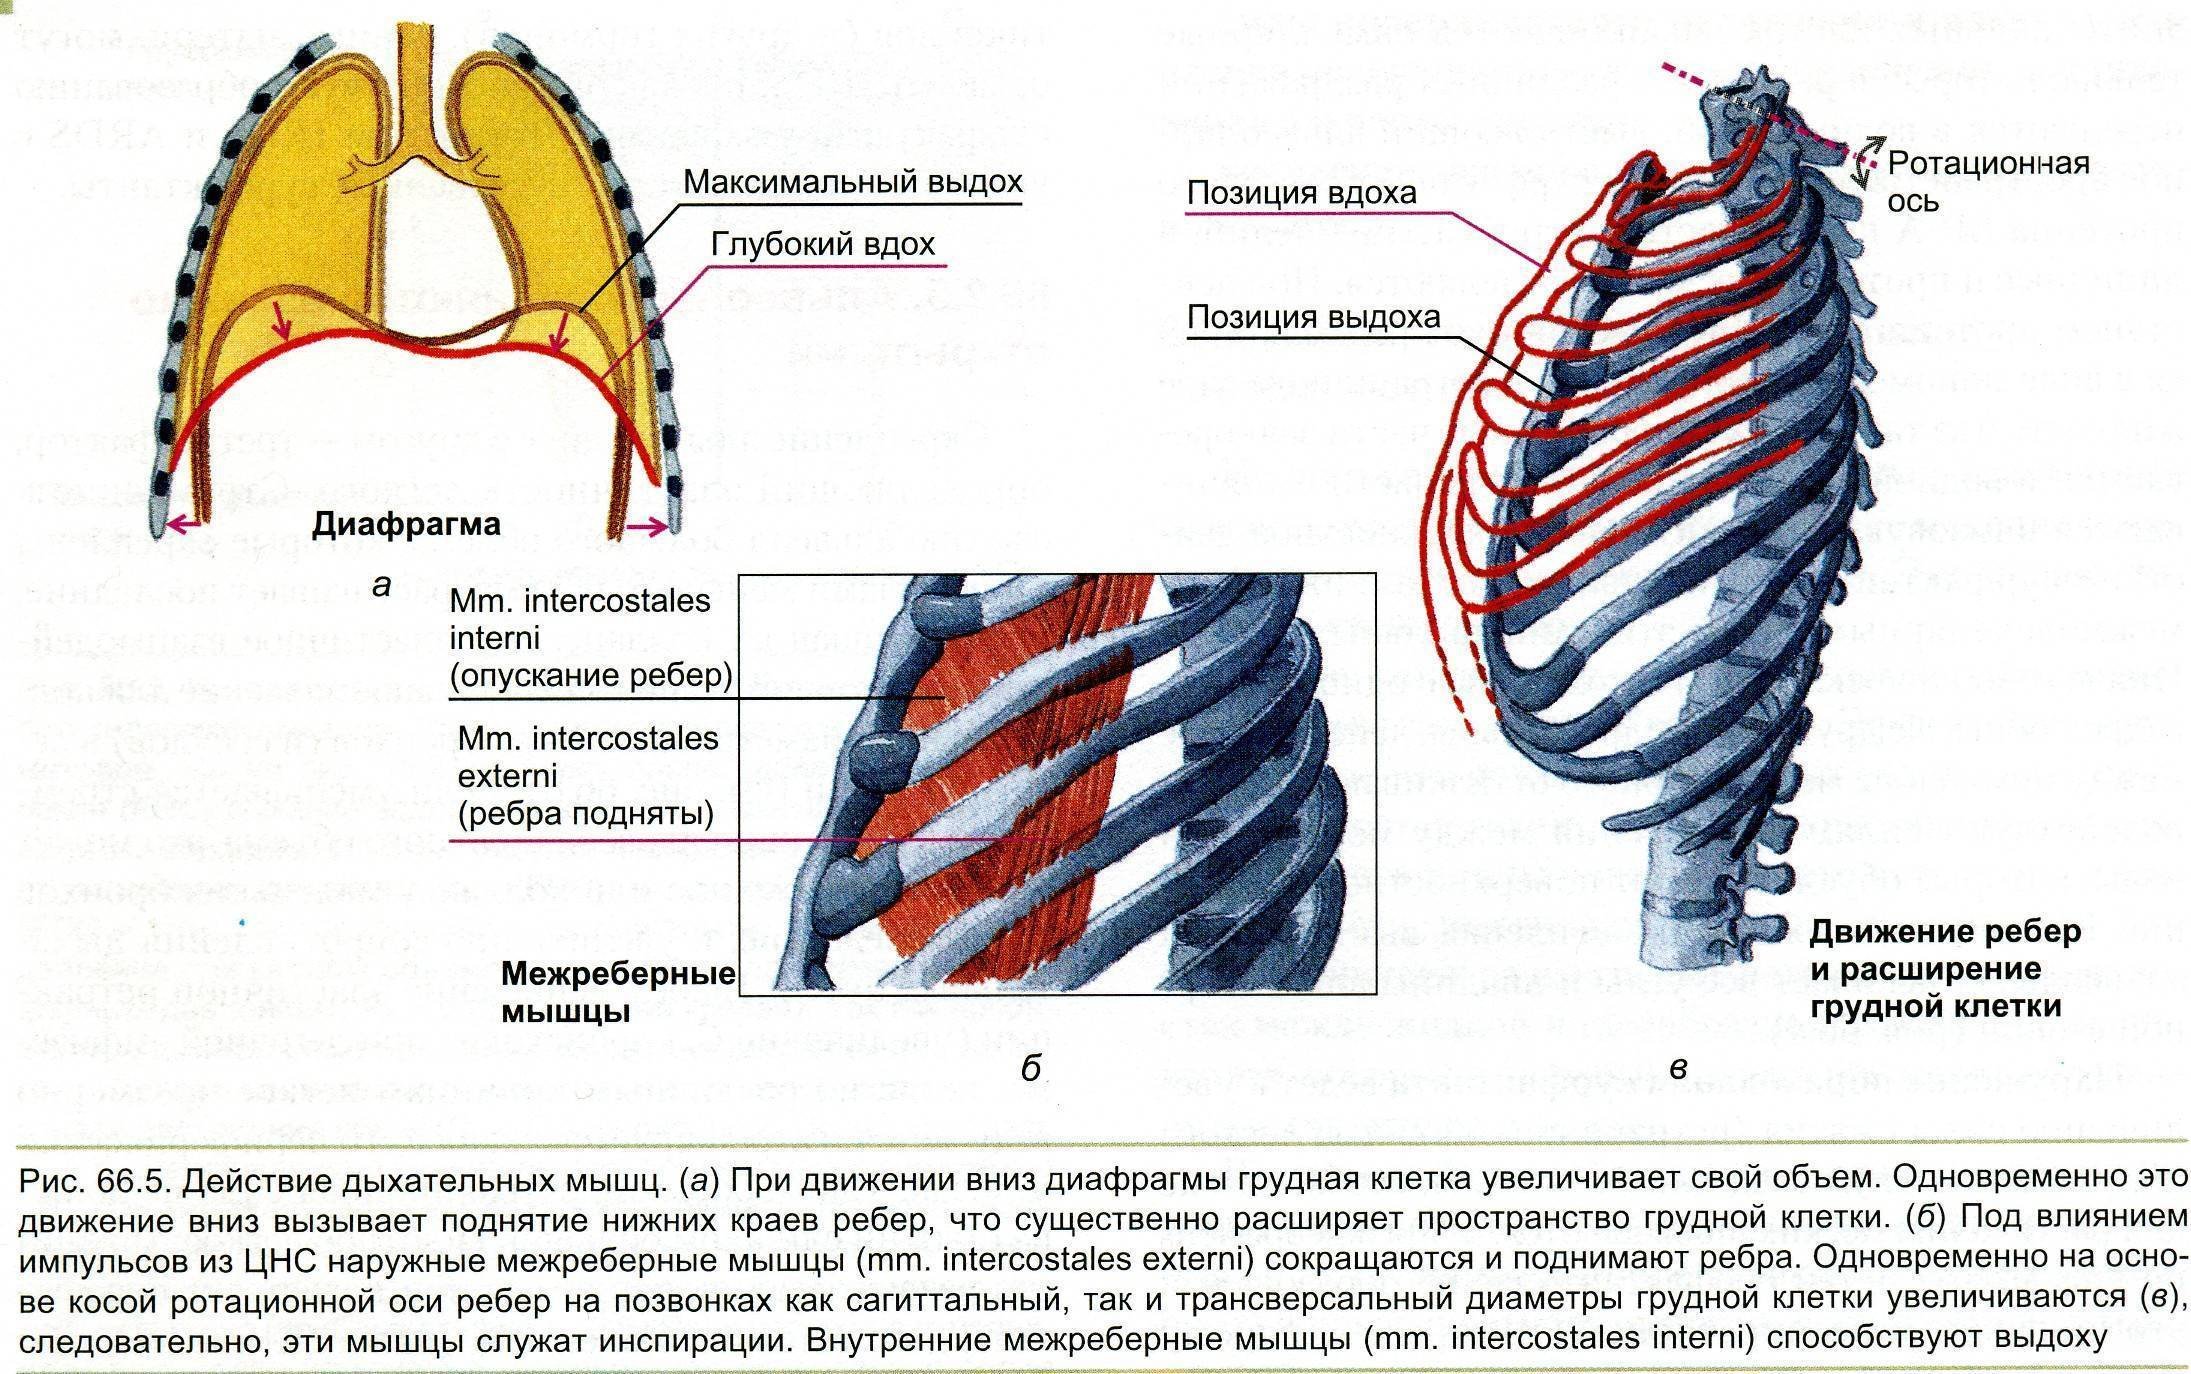 Грудная клетка при вдохе приподнимается. Наружные межреберные мышцы дыхание. При вдохе наружные межреберные мышцы и диафрагма. Вдох расширение грудной клетки мышцы. Внутренние межреберные мышцы при вдохе.